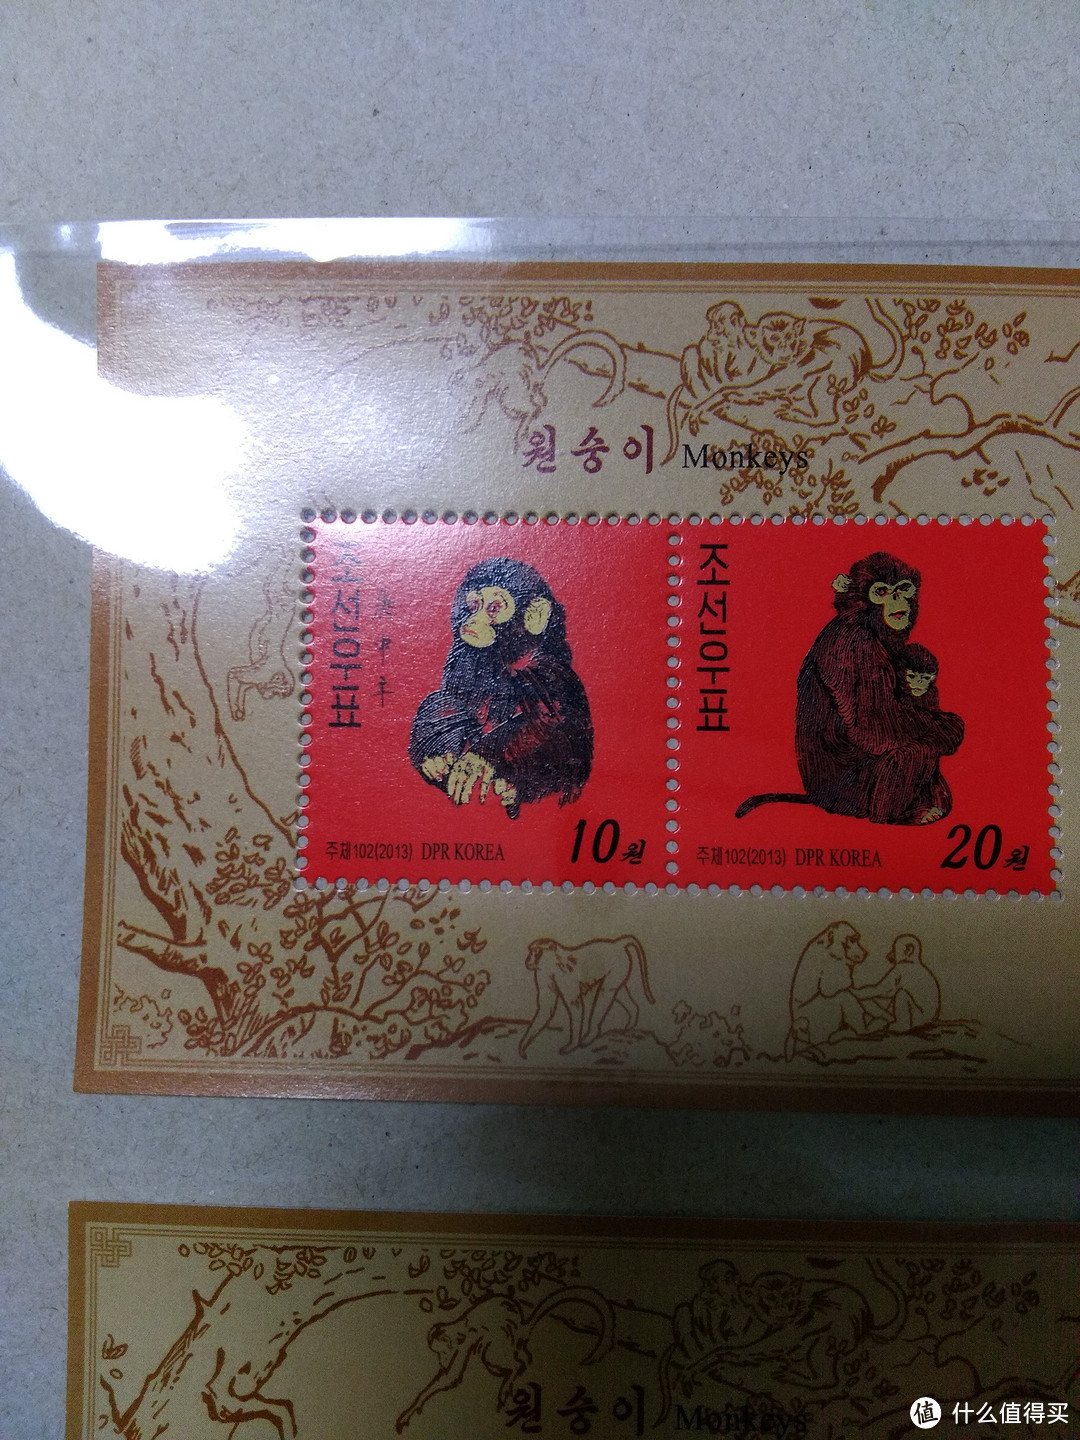 猴年话邮票之港澳台邮票购买简述